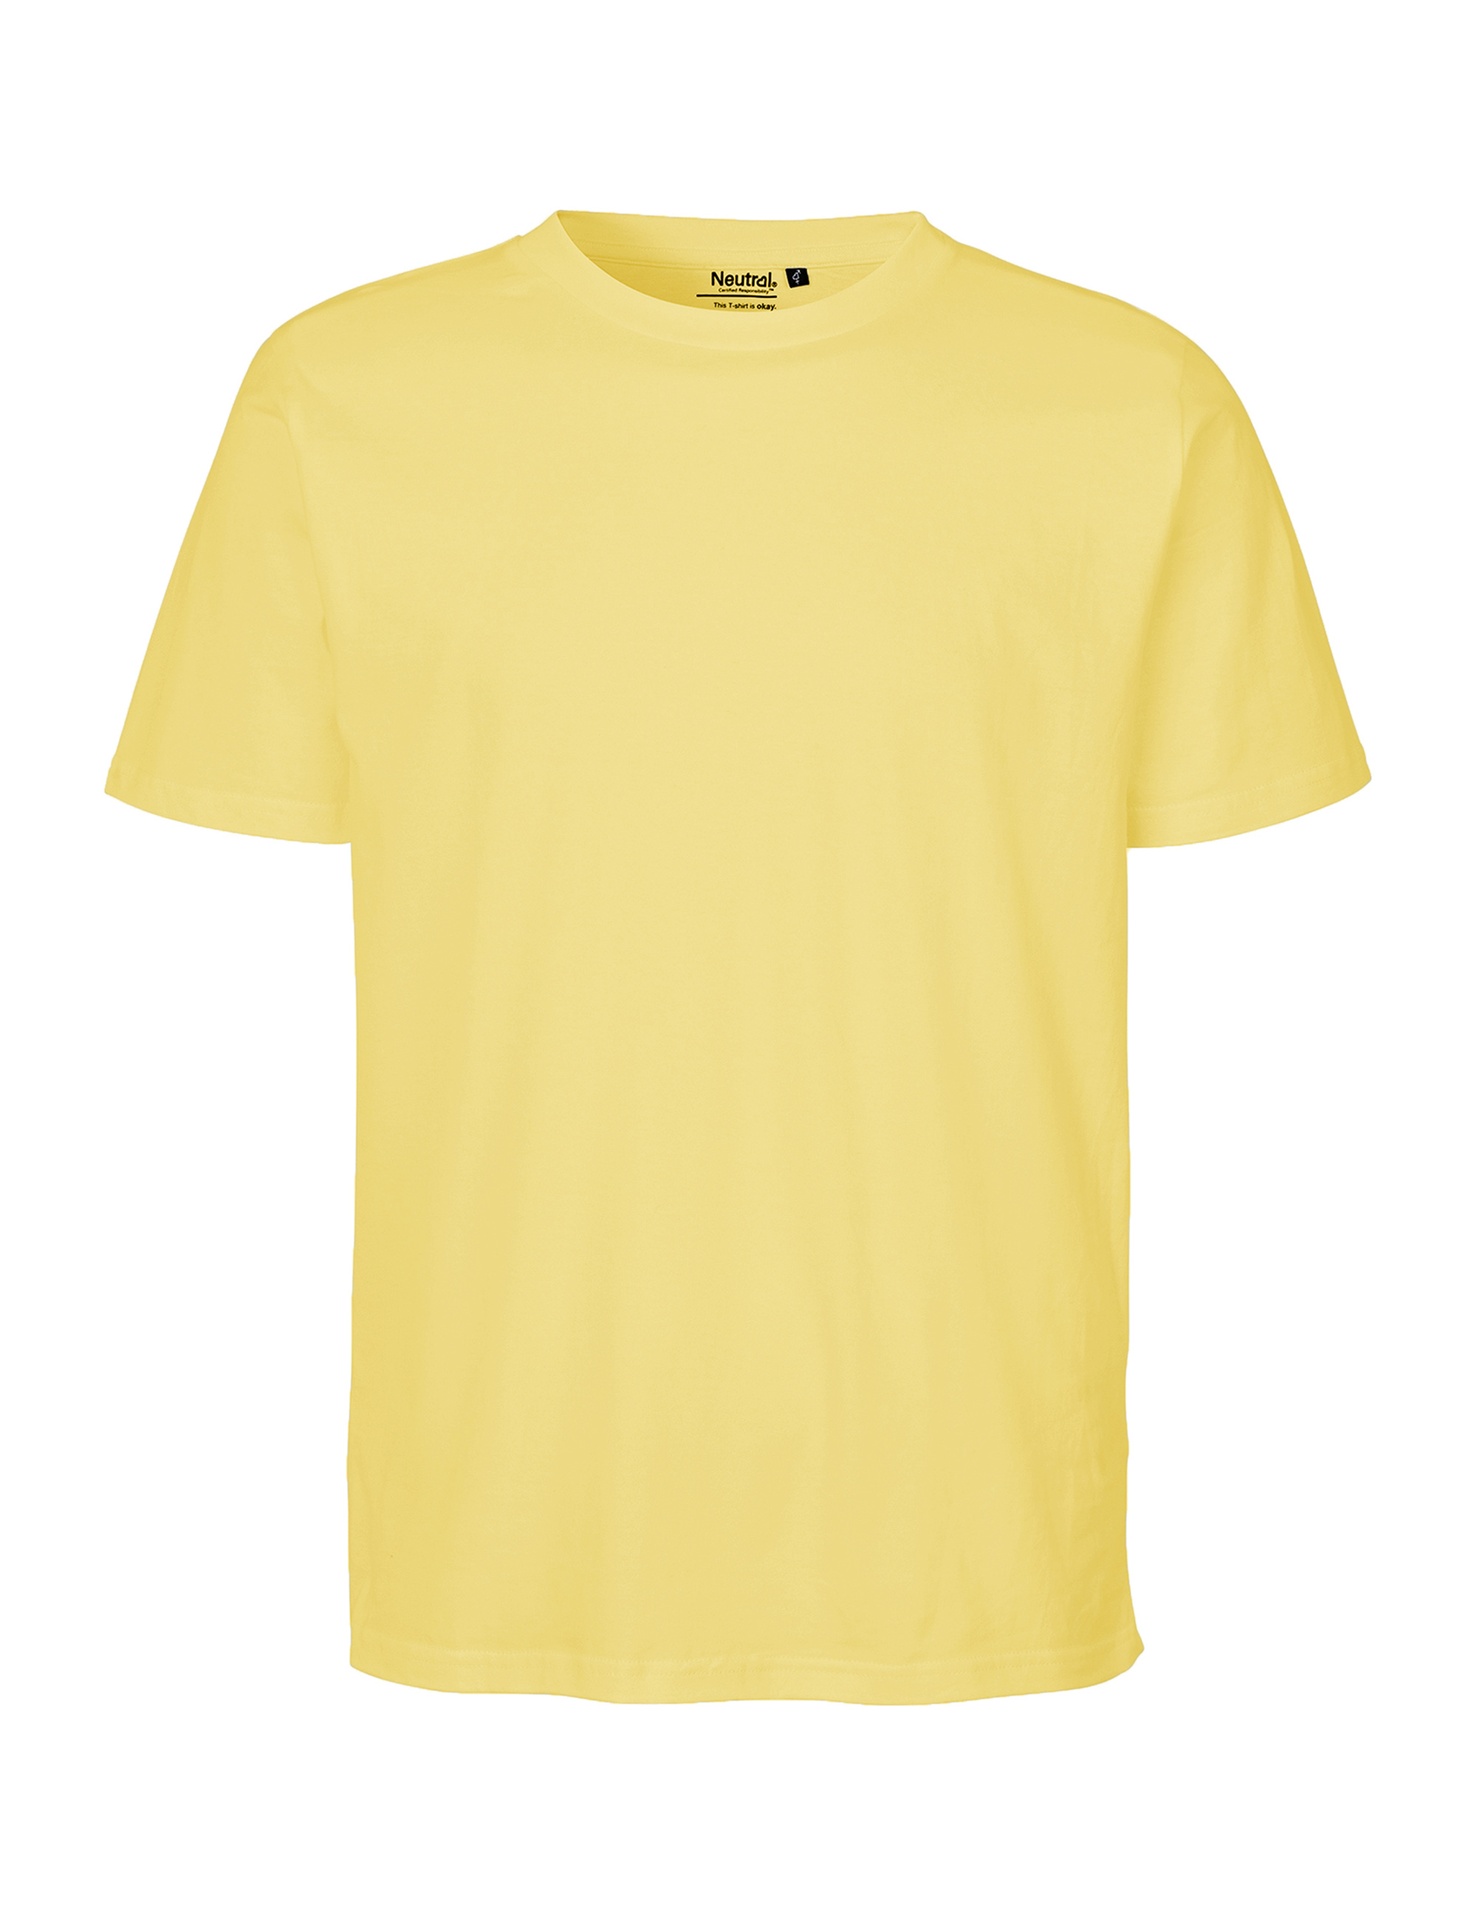 [PR/06647] Unisex Regular T-Shirt (2XL, Charcoal 06)